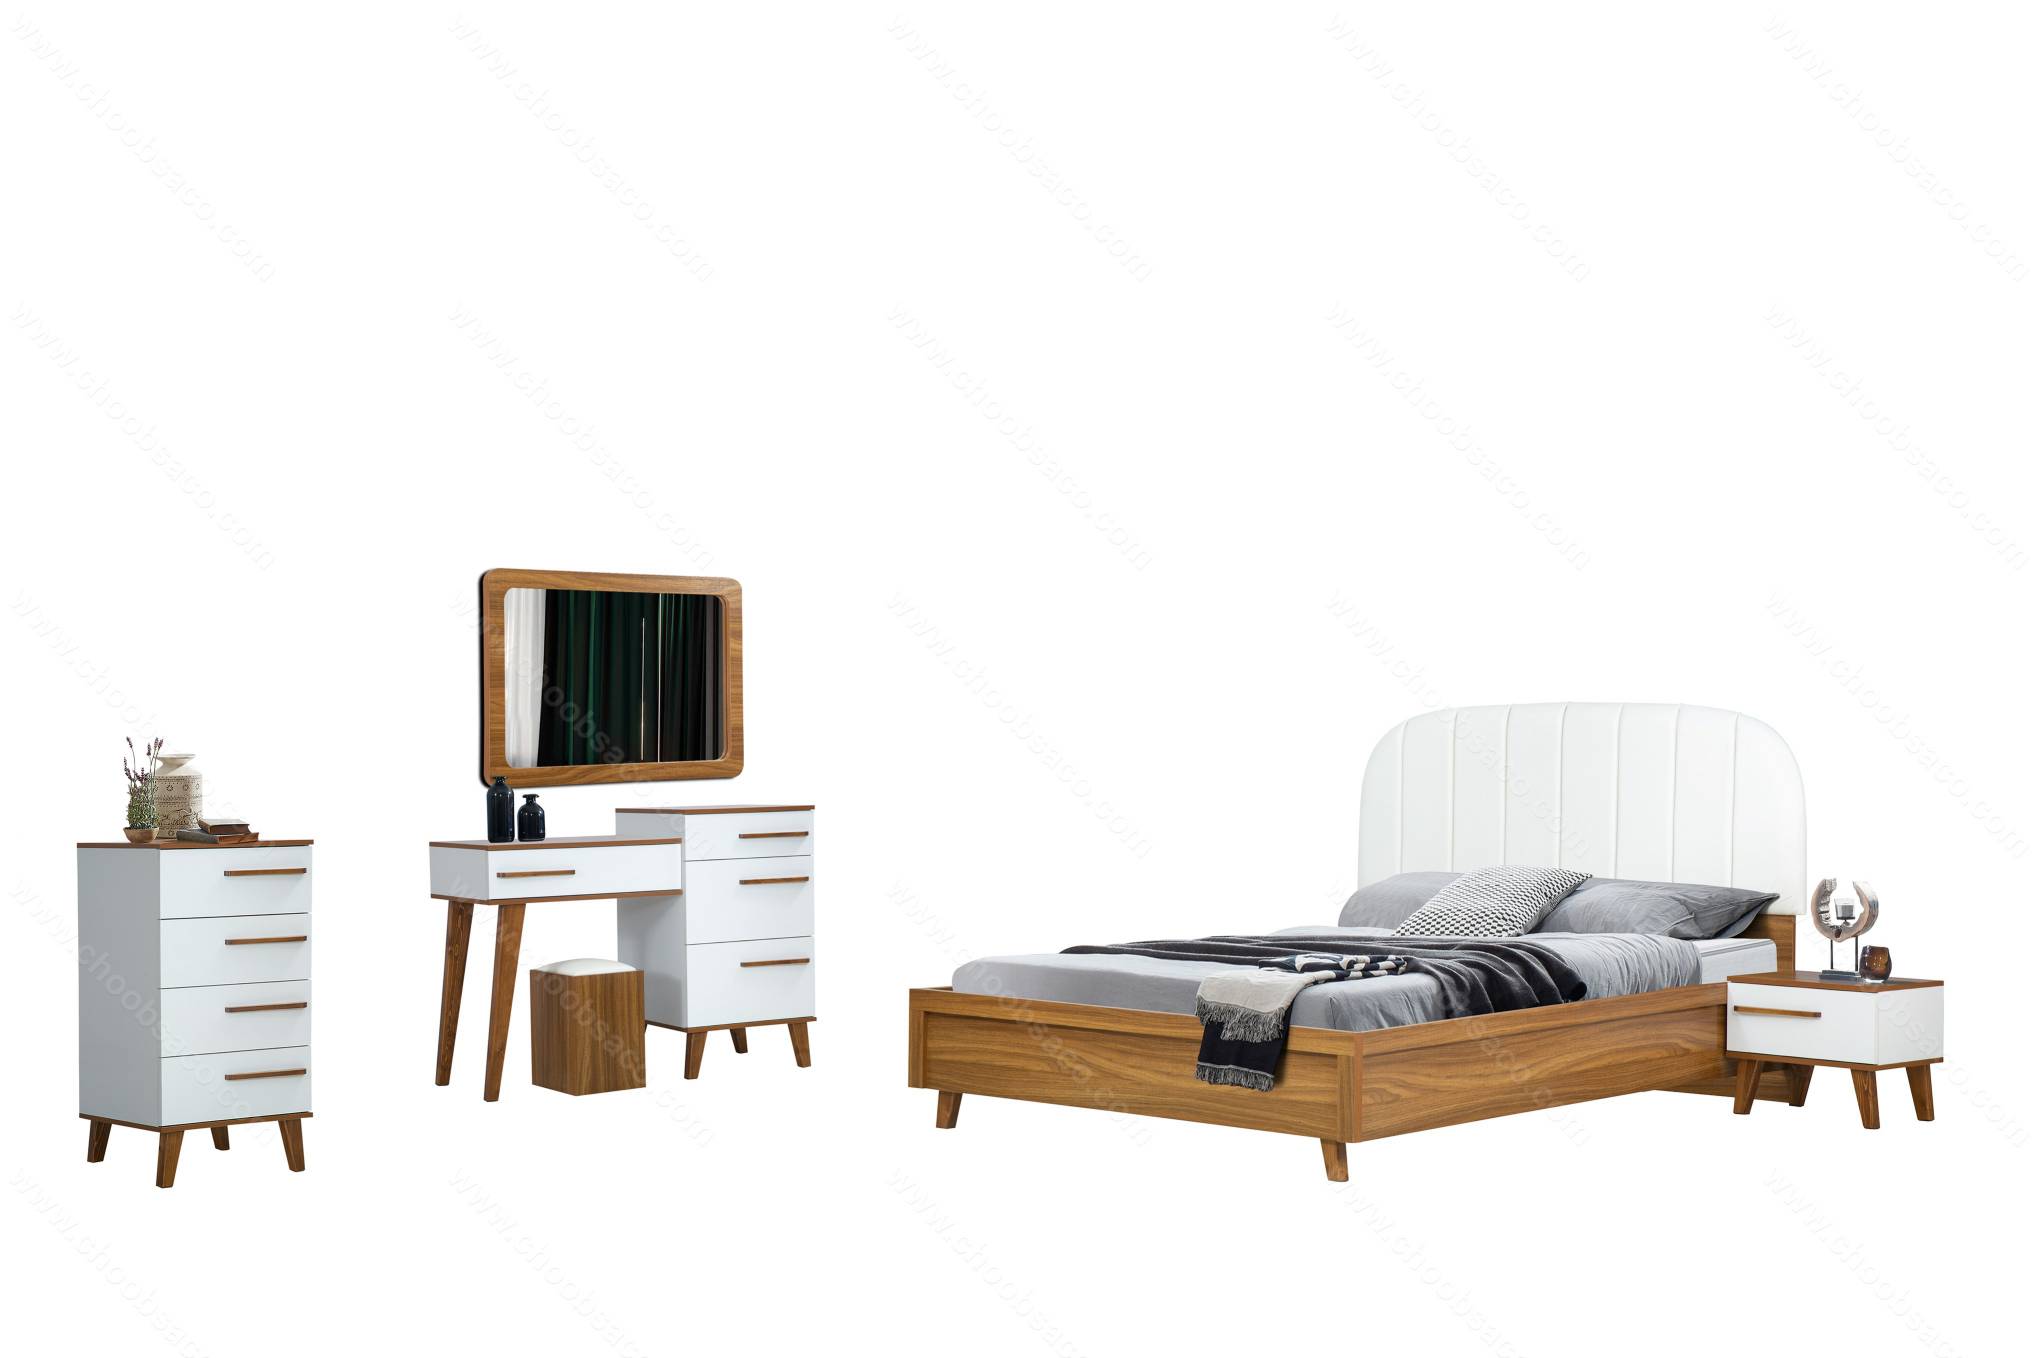 سرویس خواب دو نفره با قیمت فوق العاده و مدلهای ساده و مدرن